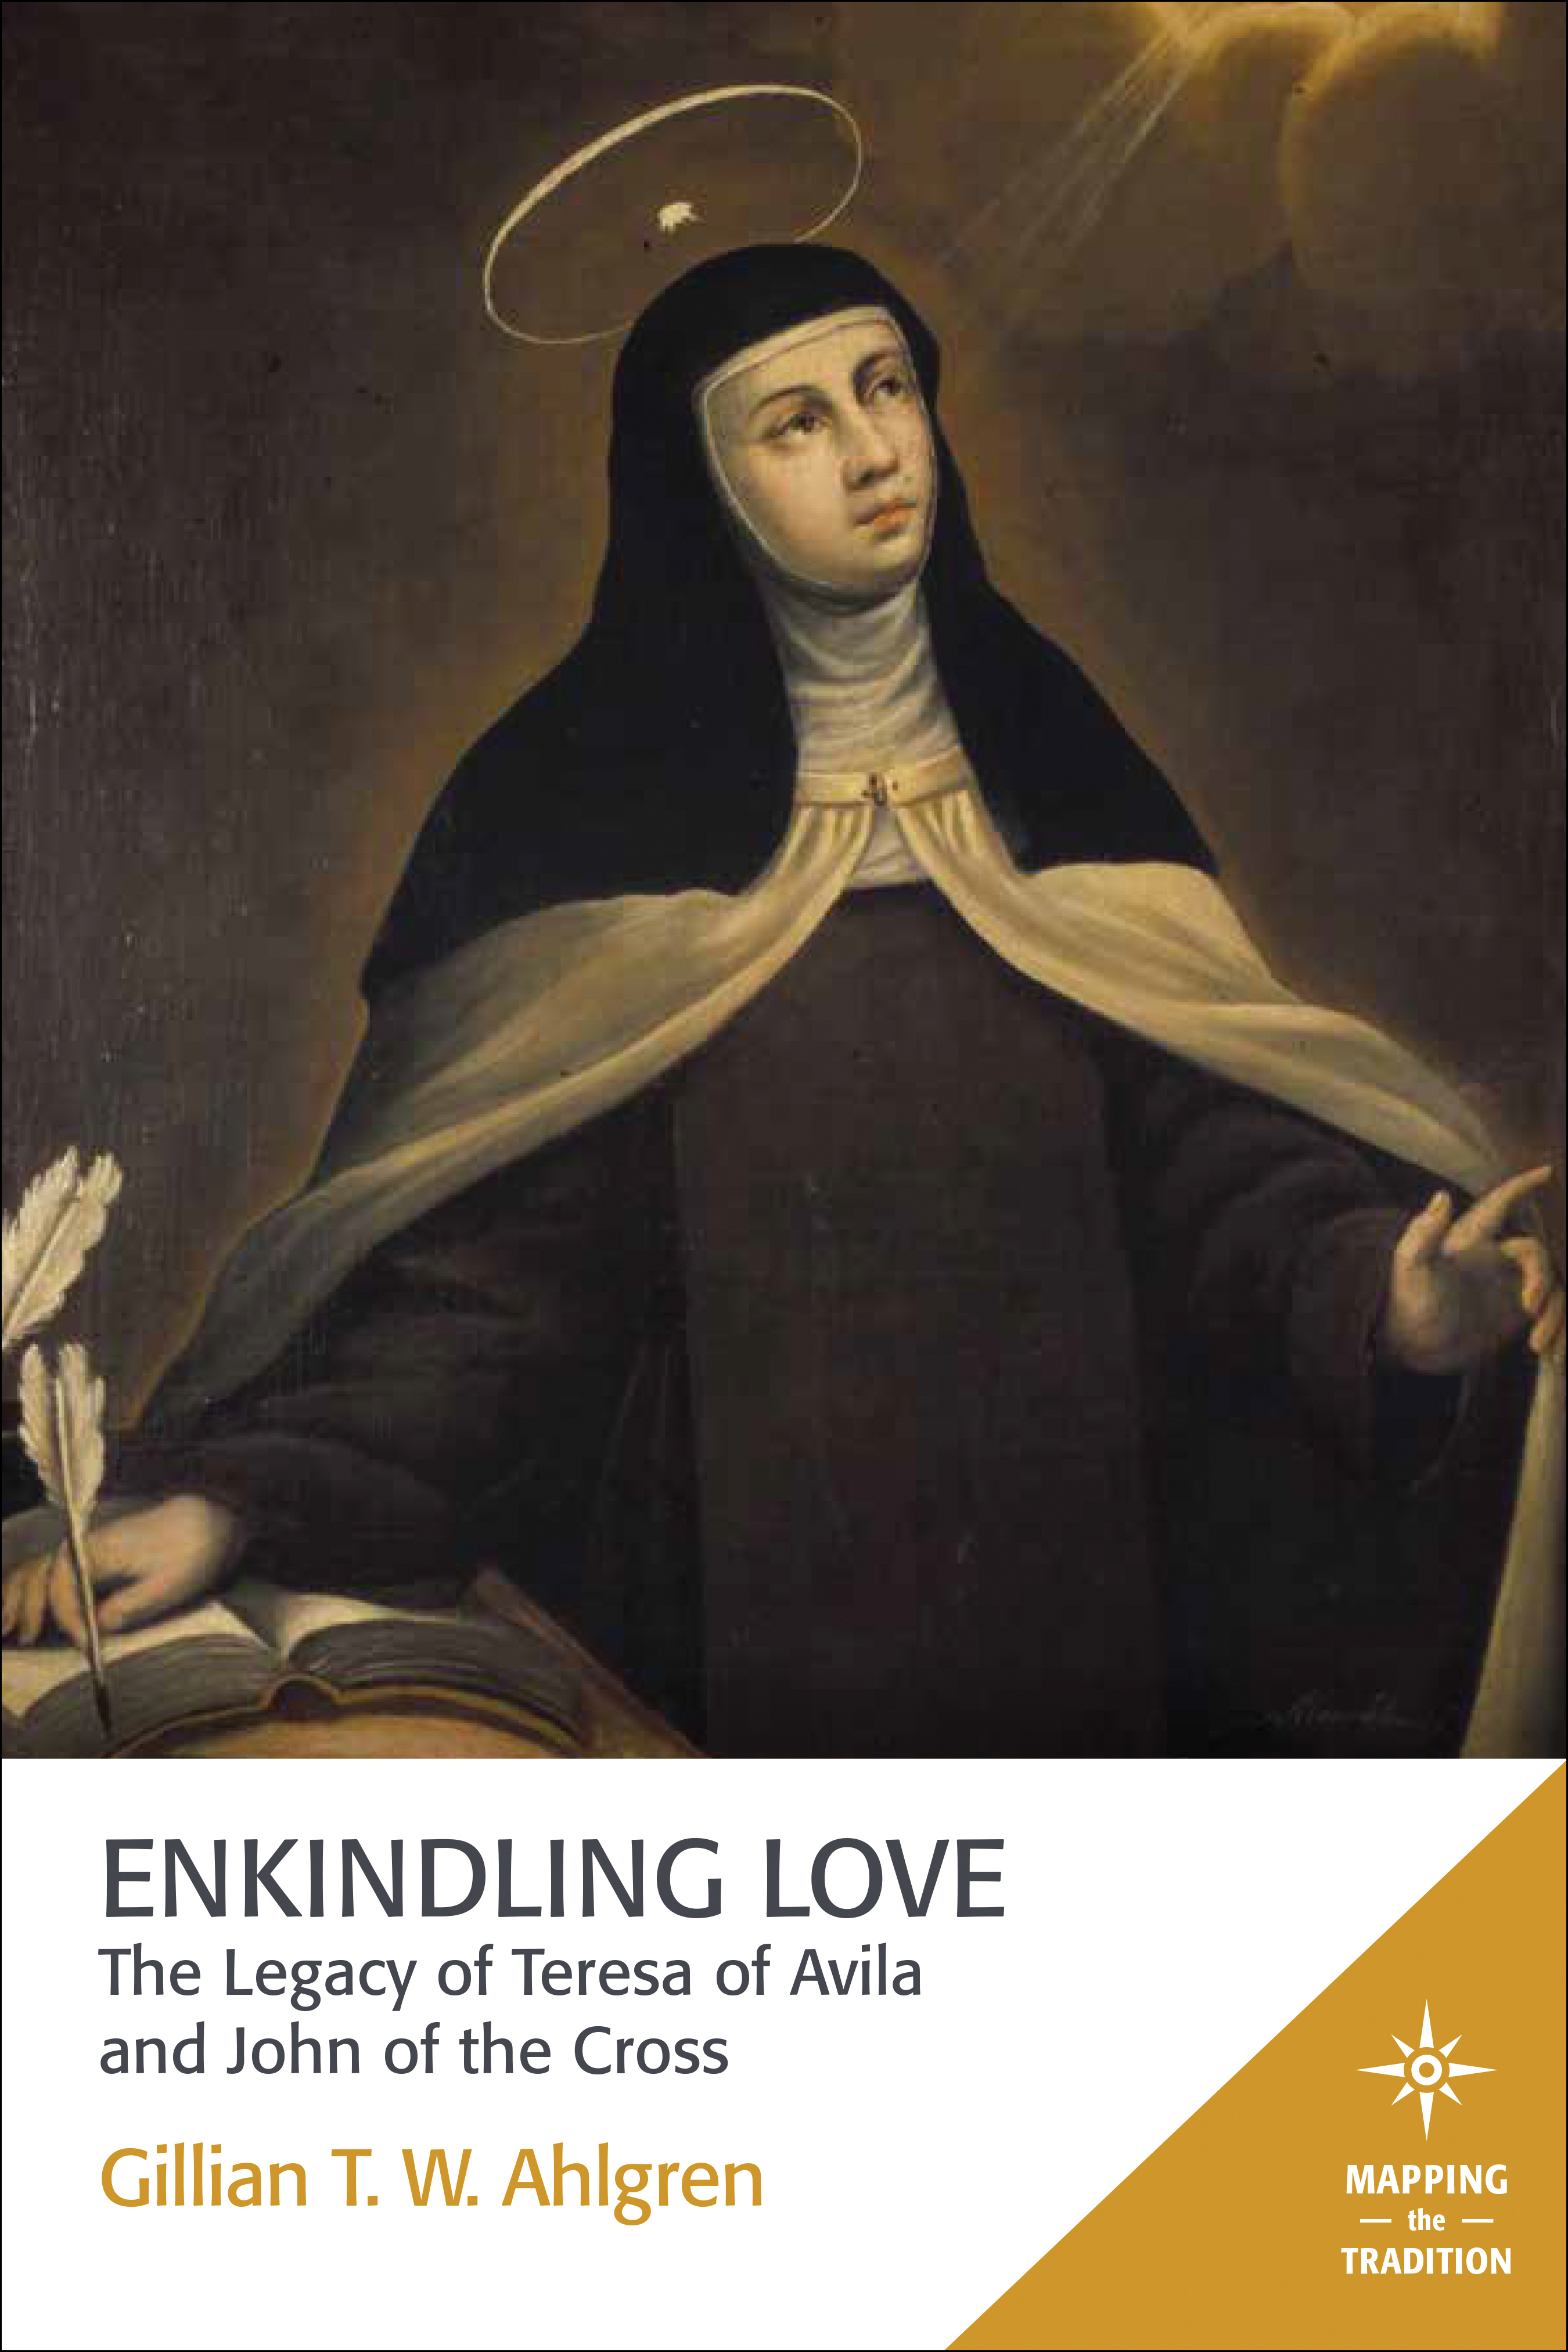 Enkindling Love: The Legacy of Teresa of Avila and John of the Cross